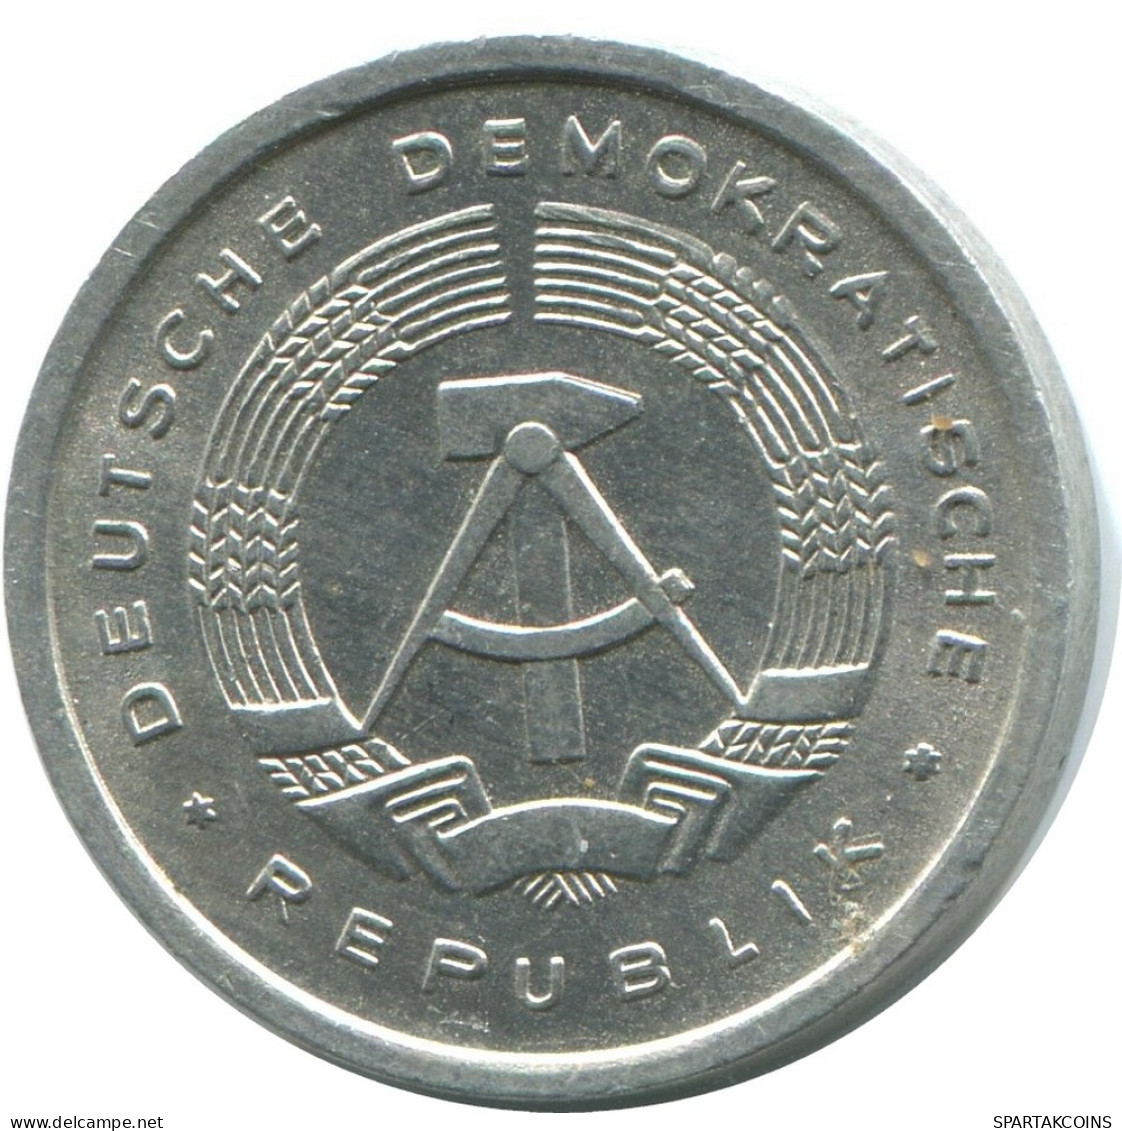 5 PFENNIG 1983 A DDR EAST ALEMANIA Moneda GERMANY #AE015.E - 5 Pfennig